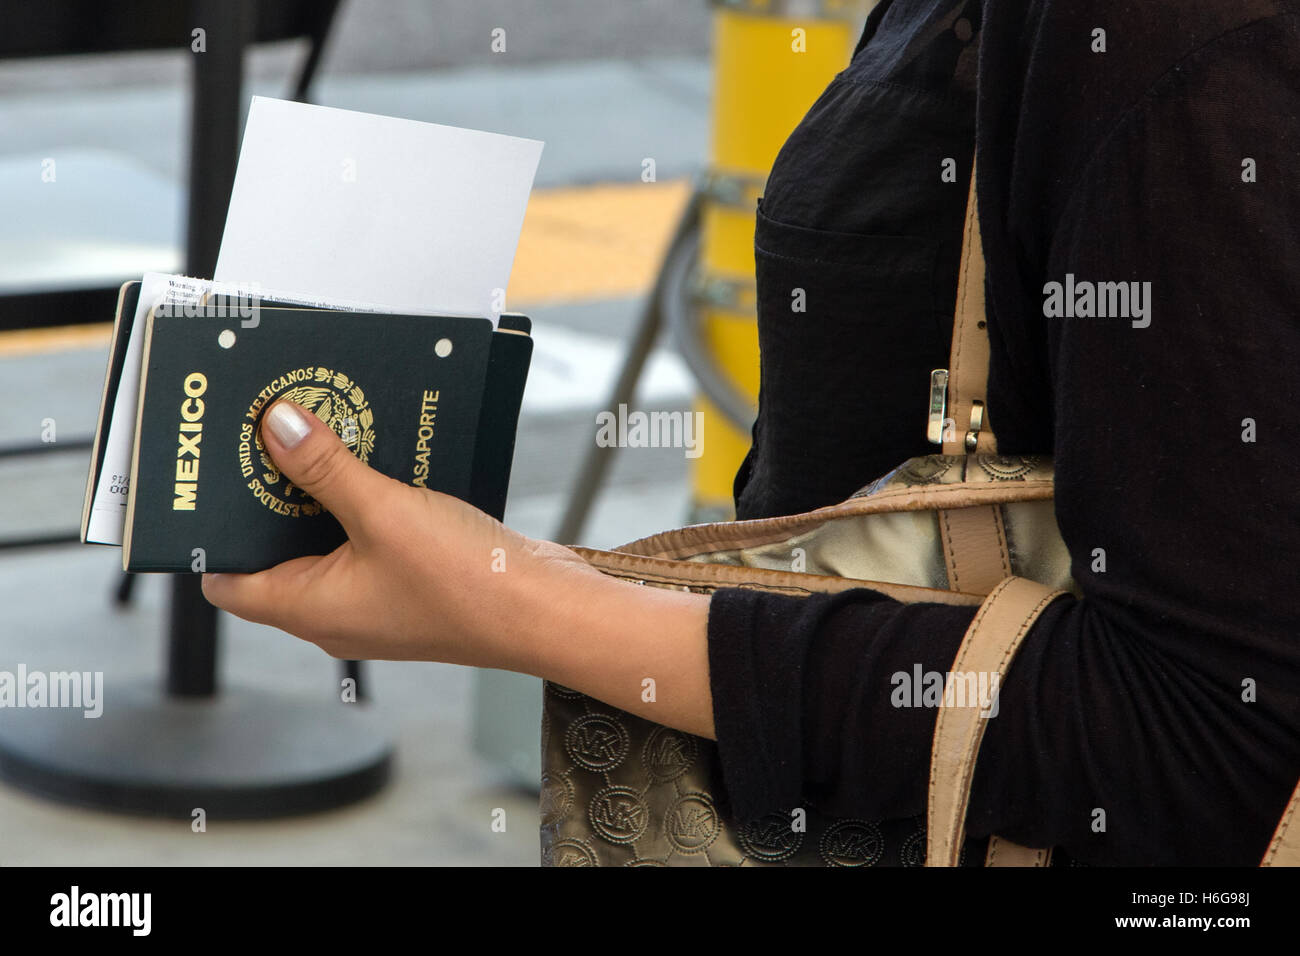 Eine mexikanische nationale erwartet einen biometrischen in Otay Mesa, San Diego an der US-mexikanischen Grenze während ein Pilotprogramm für Teilnehmer, die ihr Visum eingereist sind zu erfassen. Weitere Informationen finden Sie unten. Stockfoto